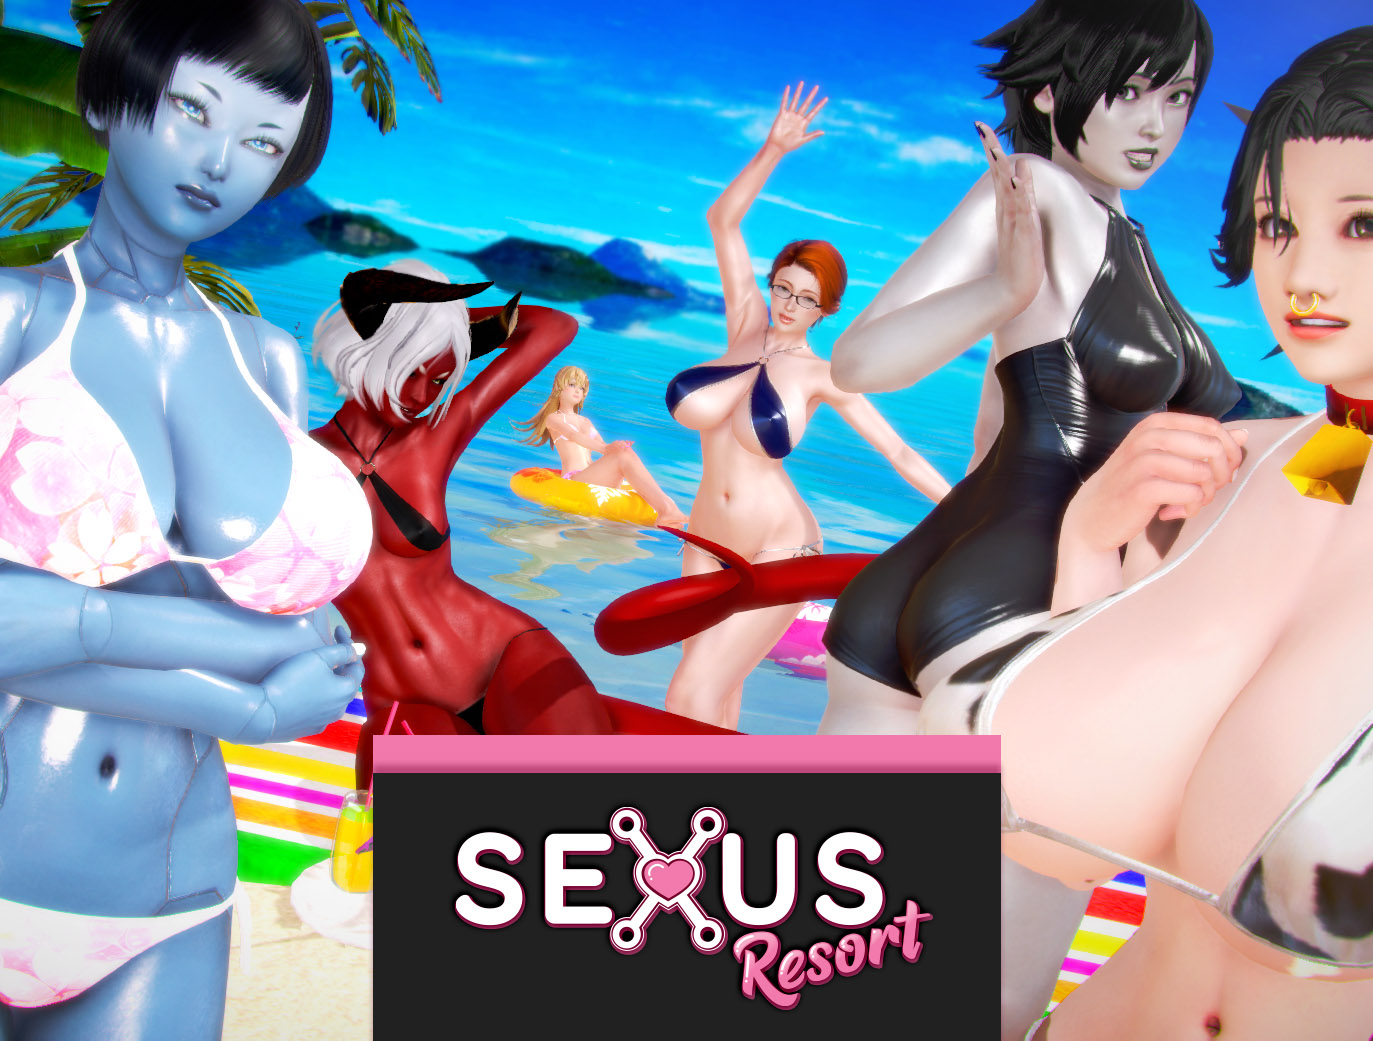 Sexus resort